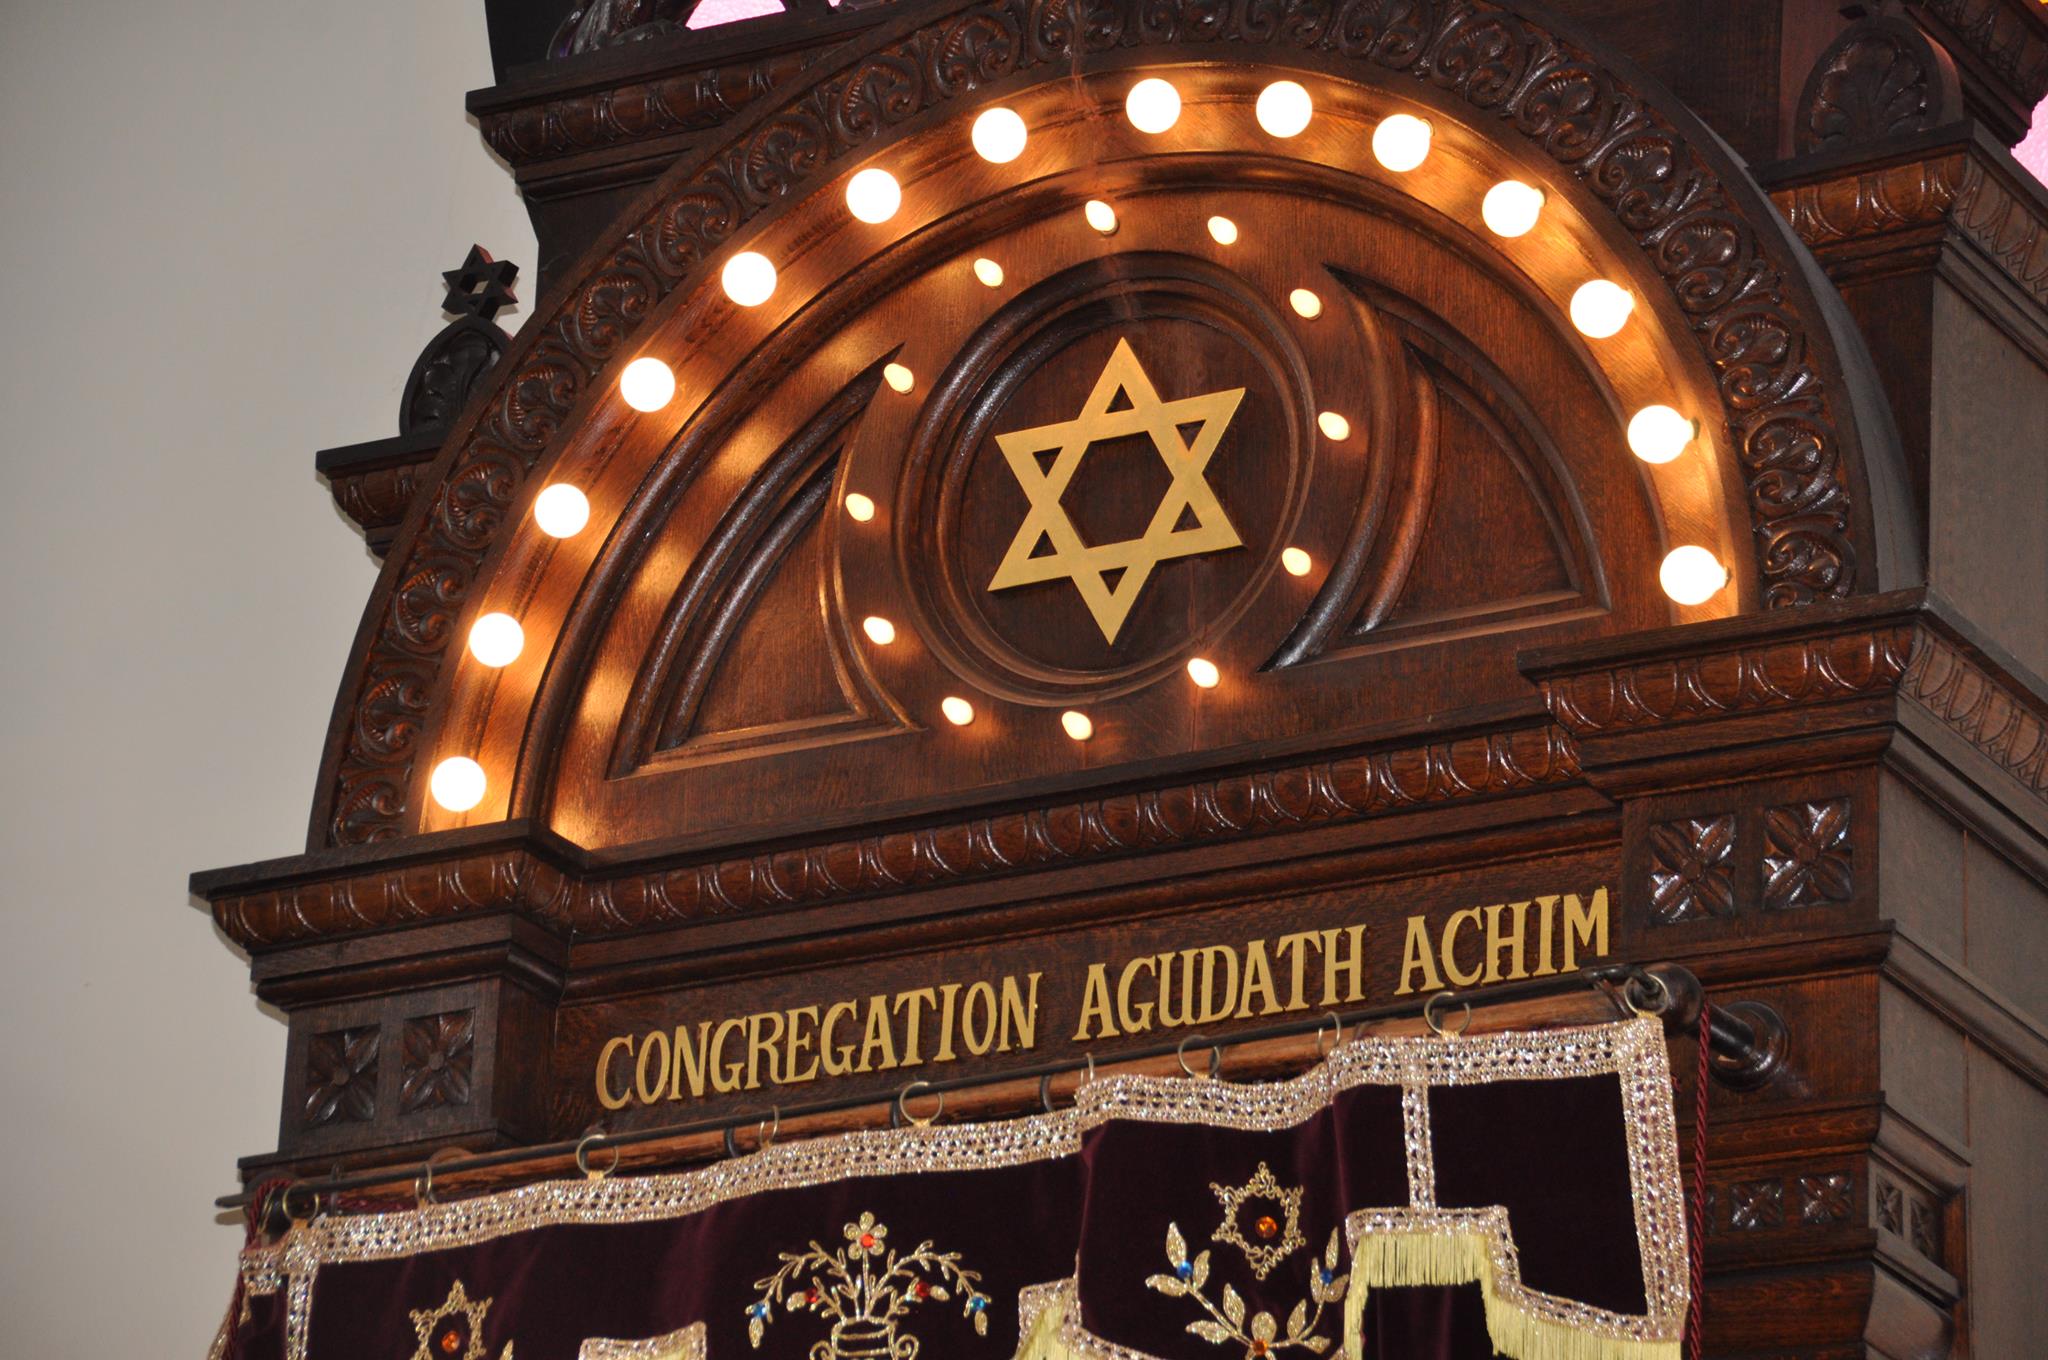 Congregation Agudath Achim